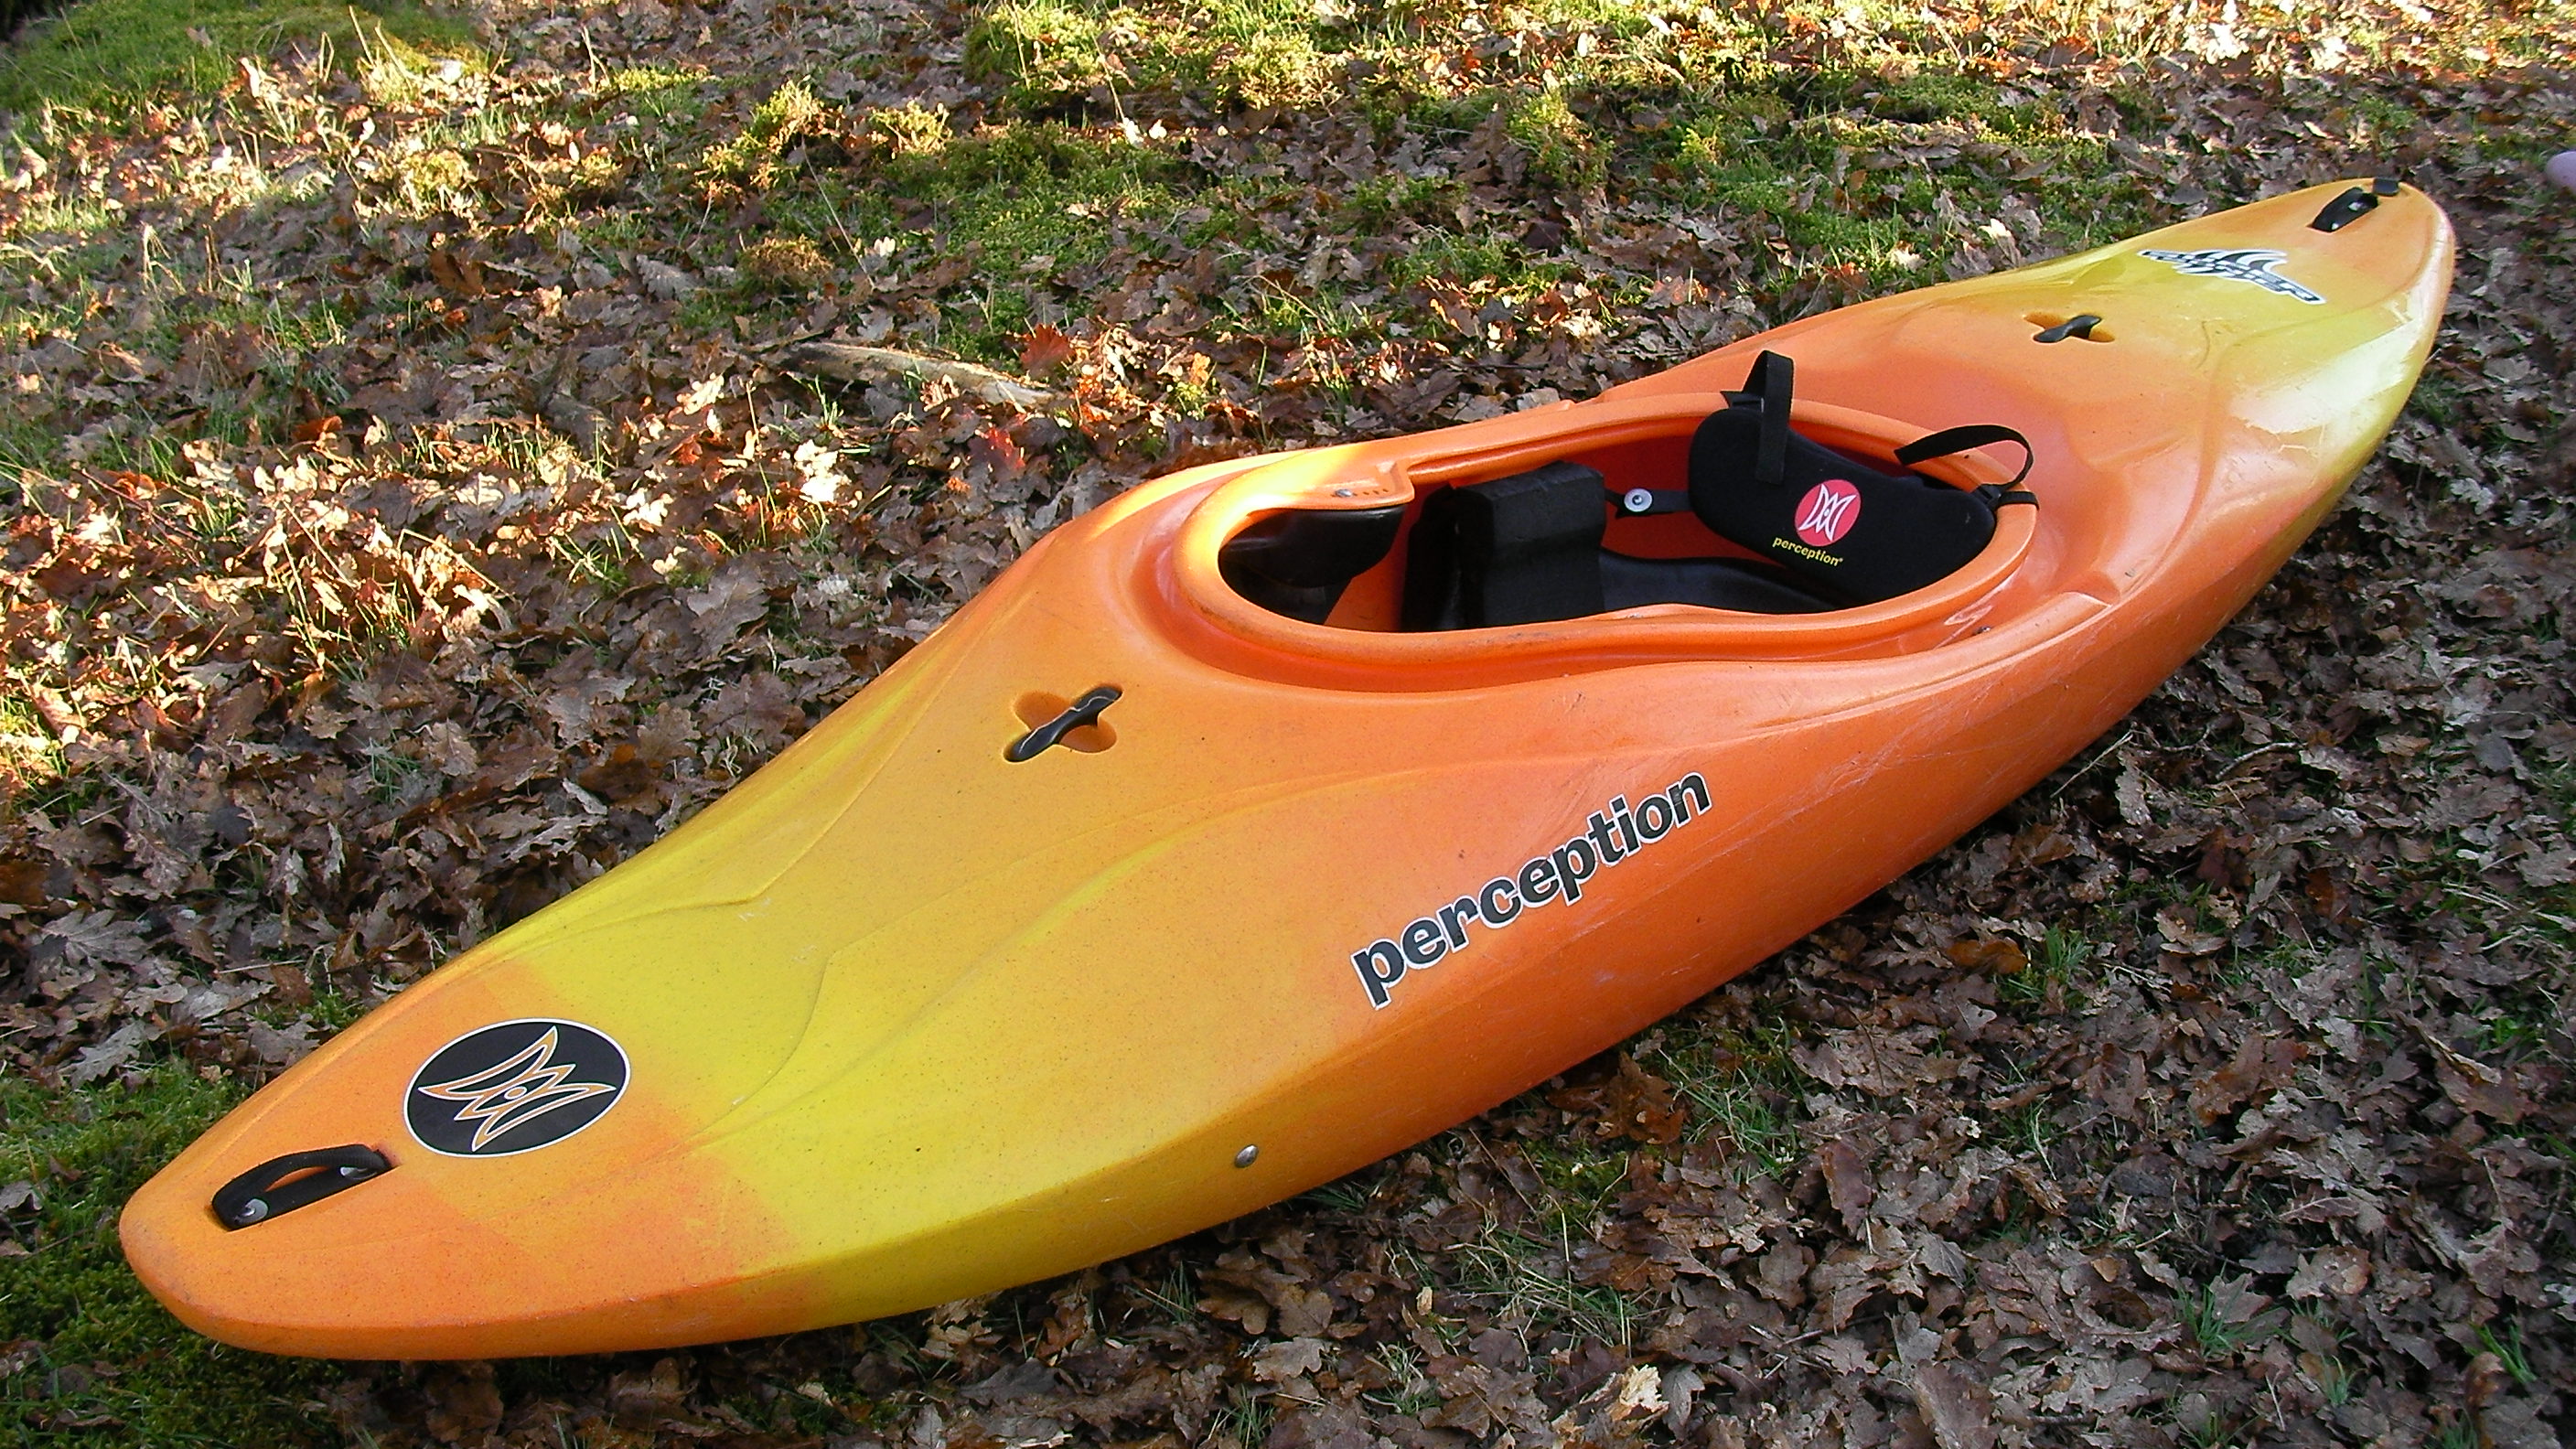 ny nc: buy kayak fun boat